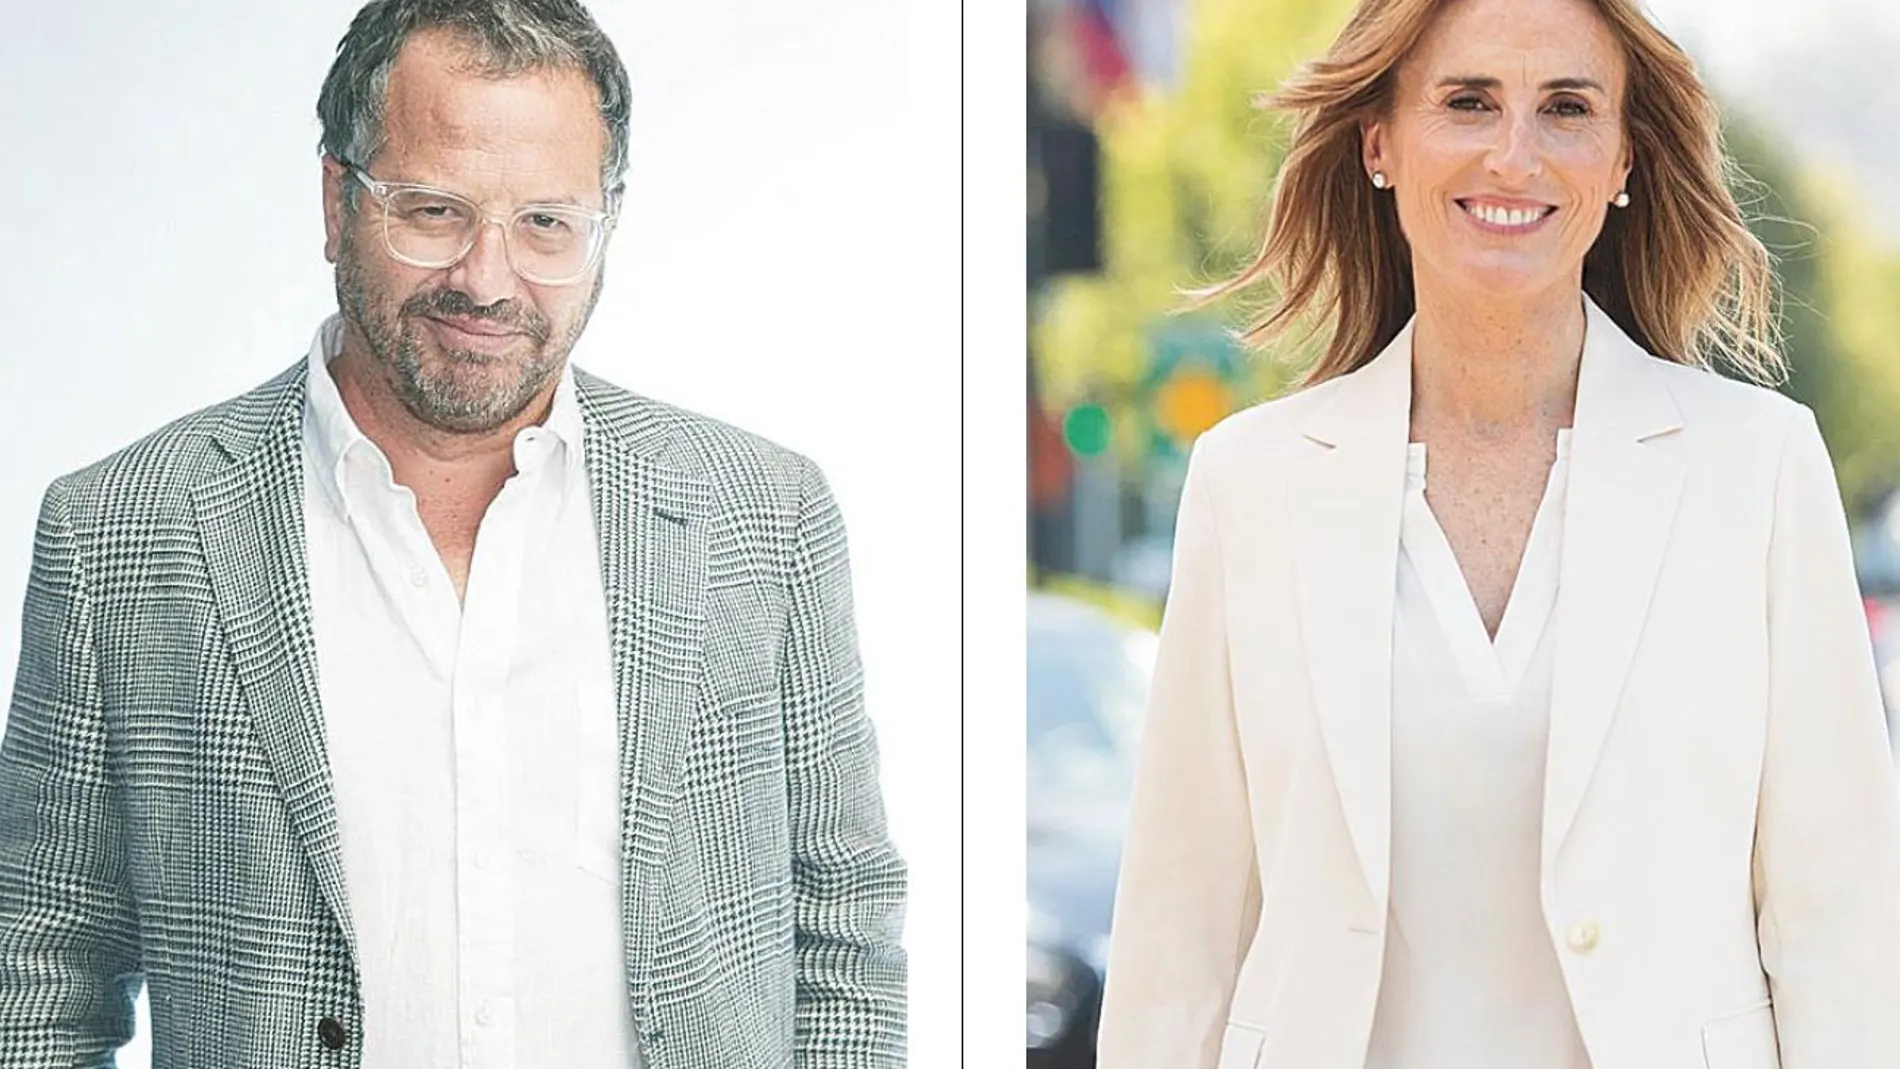 Los candidatos Patricio Fernández Chadwick y Marcela Cubillos Sigall